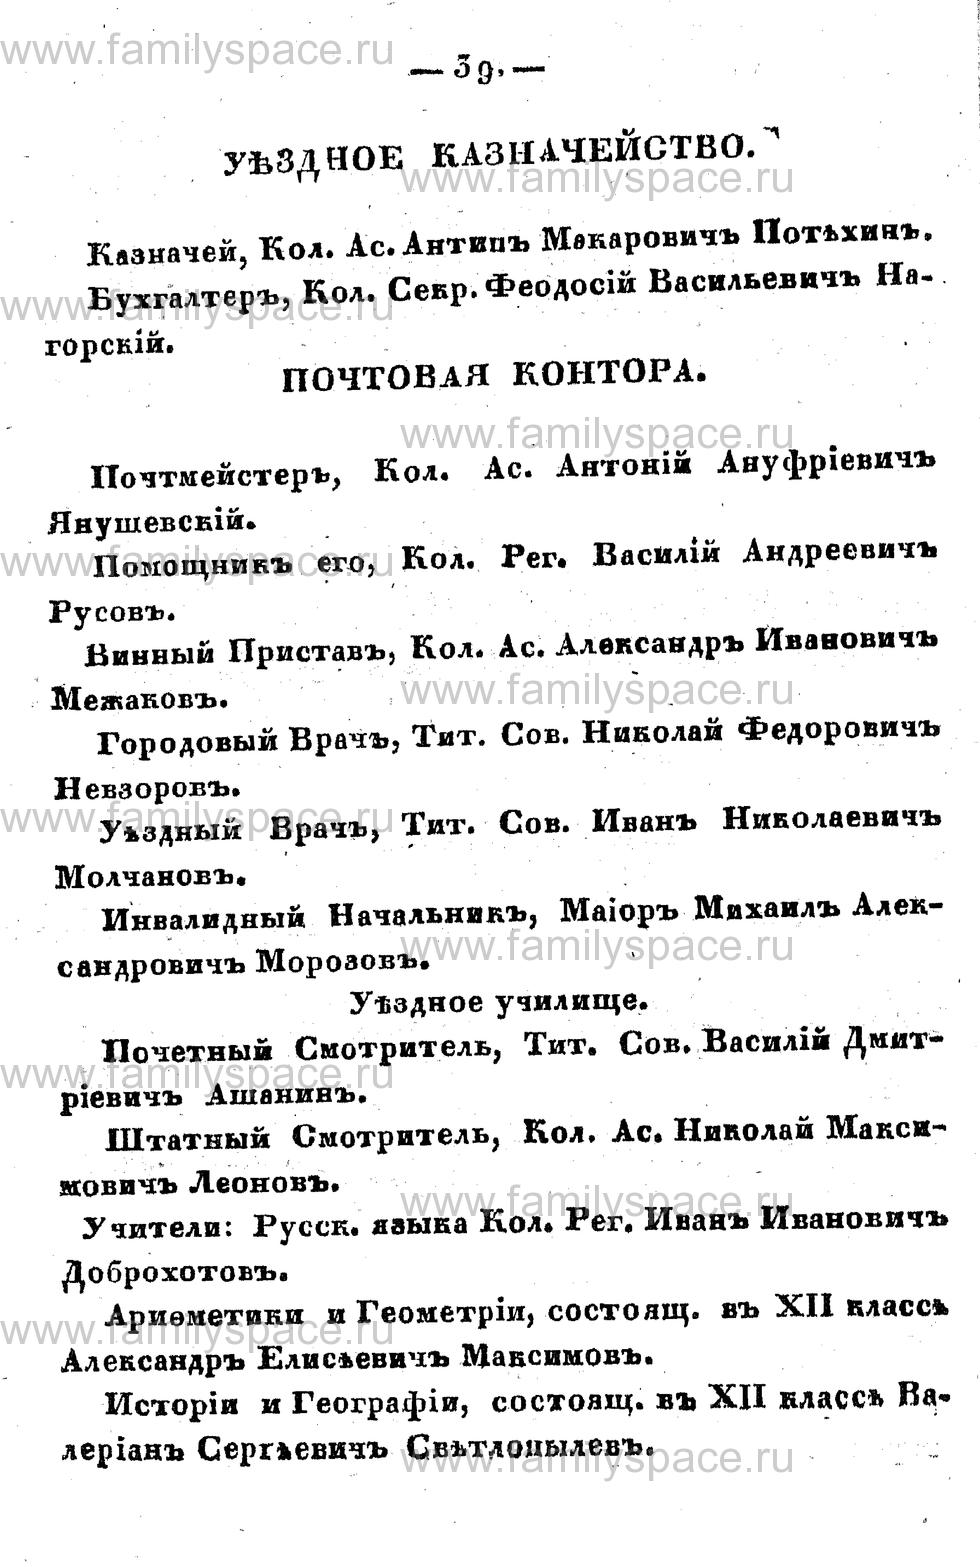 Поиск по фамилии - Памятная книжка Костромской губернии на 1857 год, страница 39